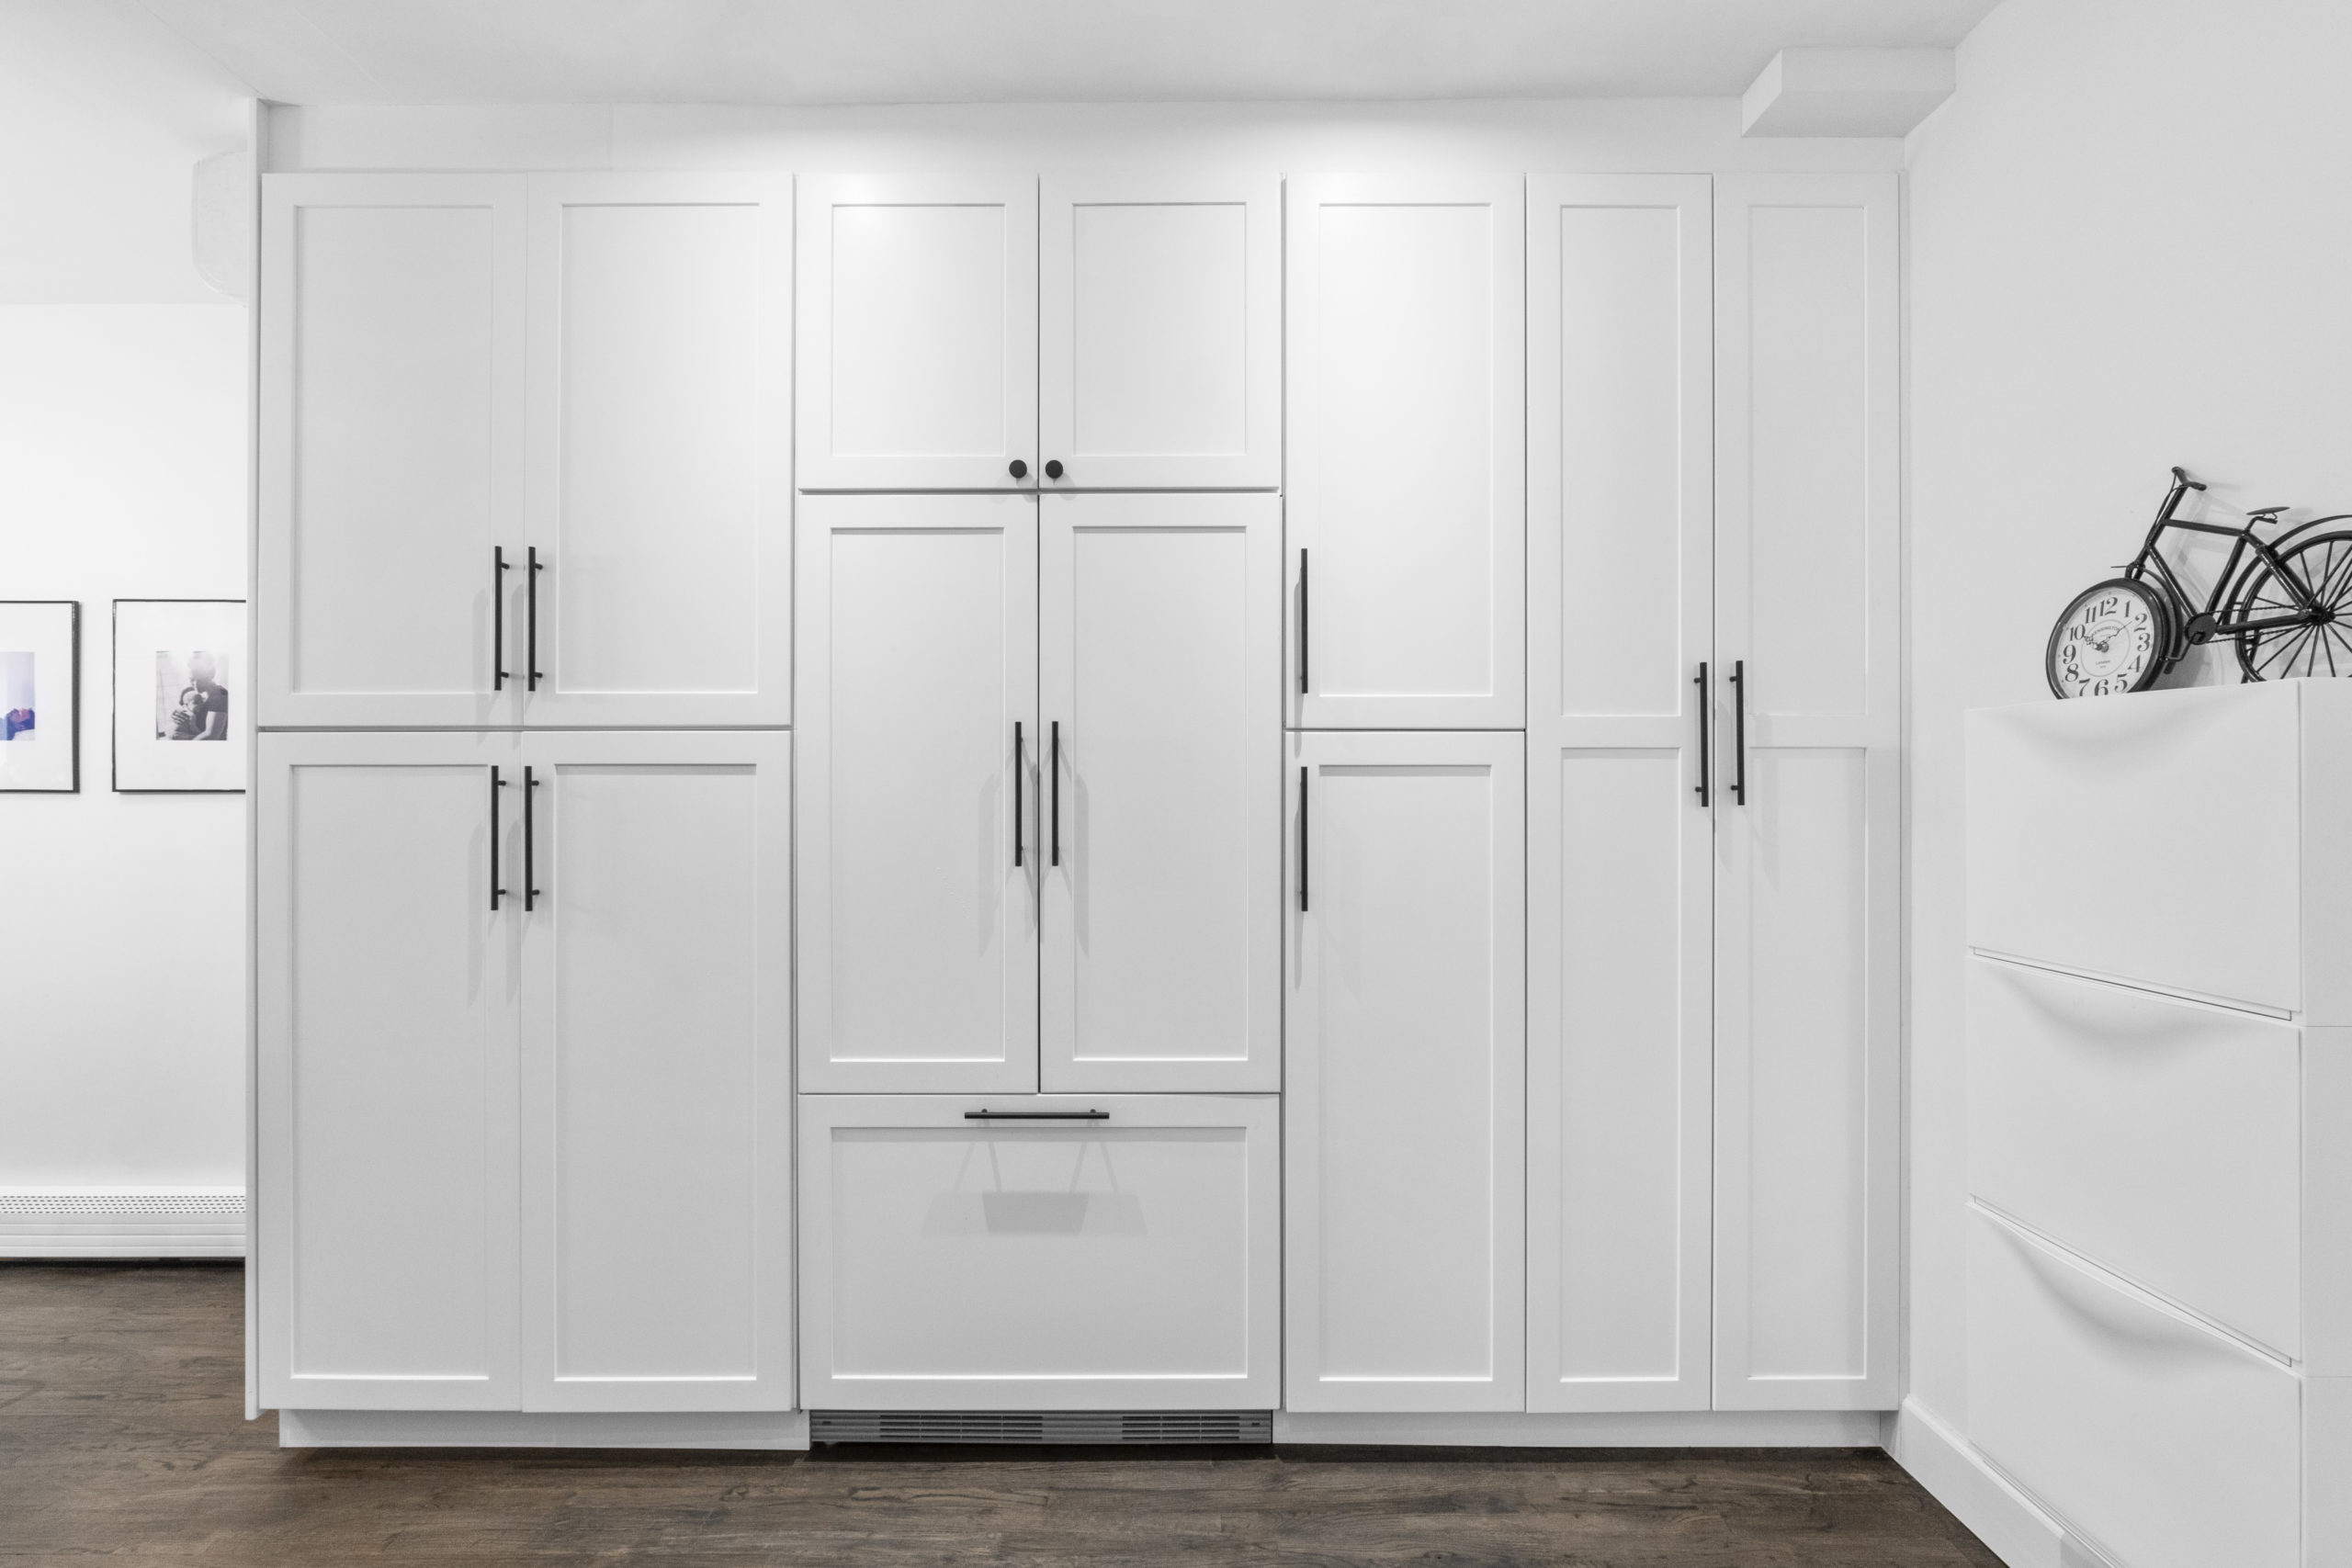 hidden fridge cabinet in kitchen with white built ins